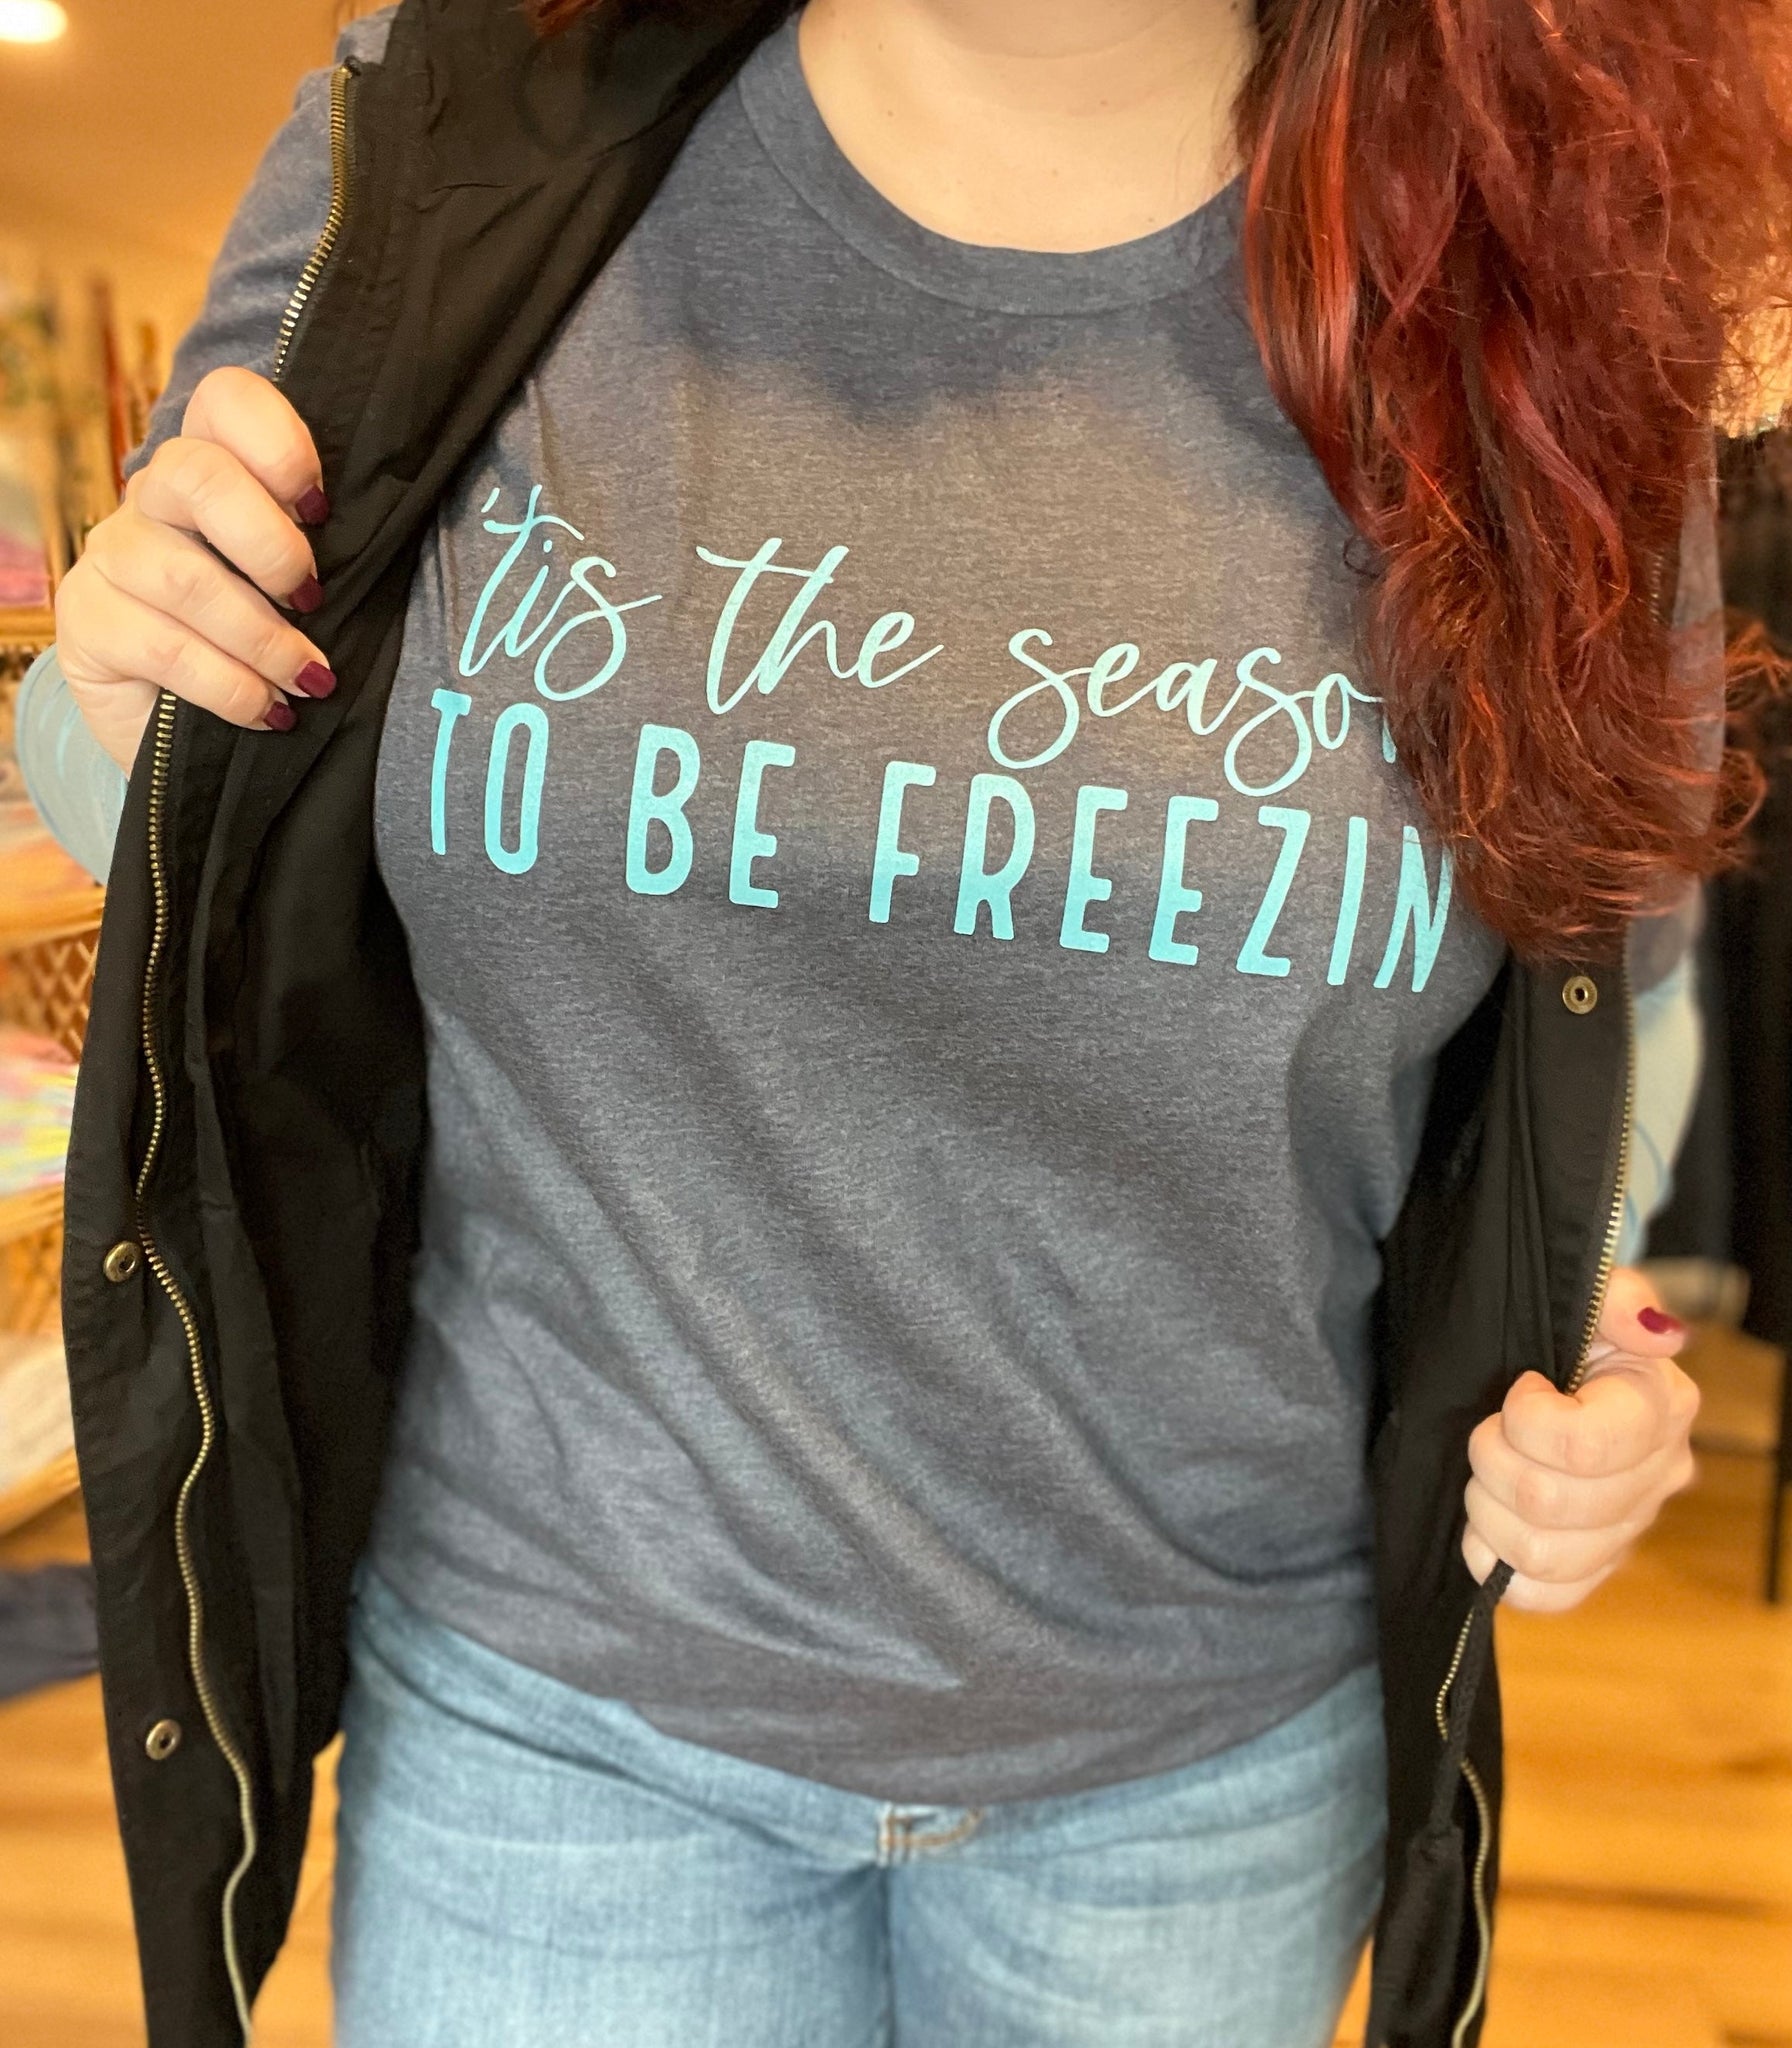 Tis The Season To Be Freezin' - RTS